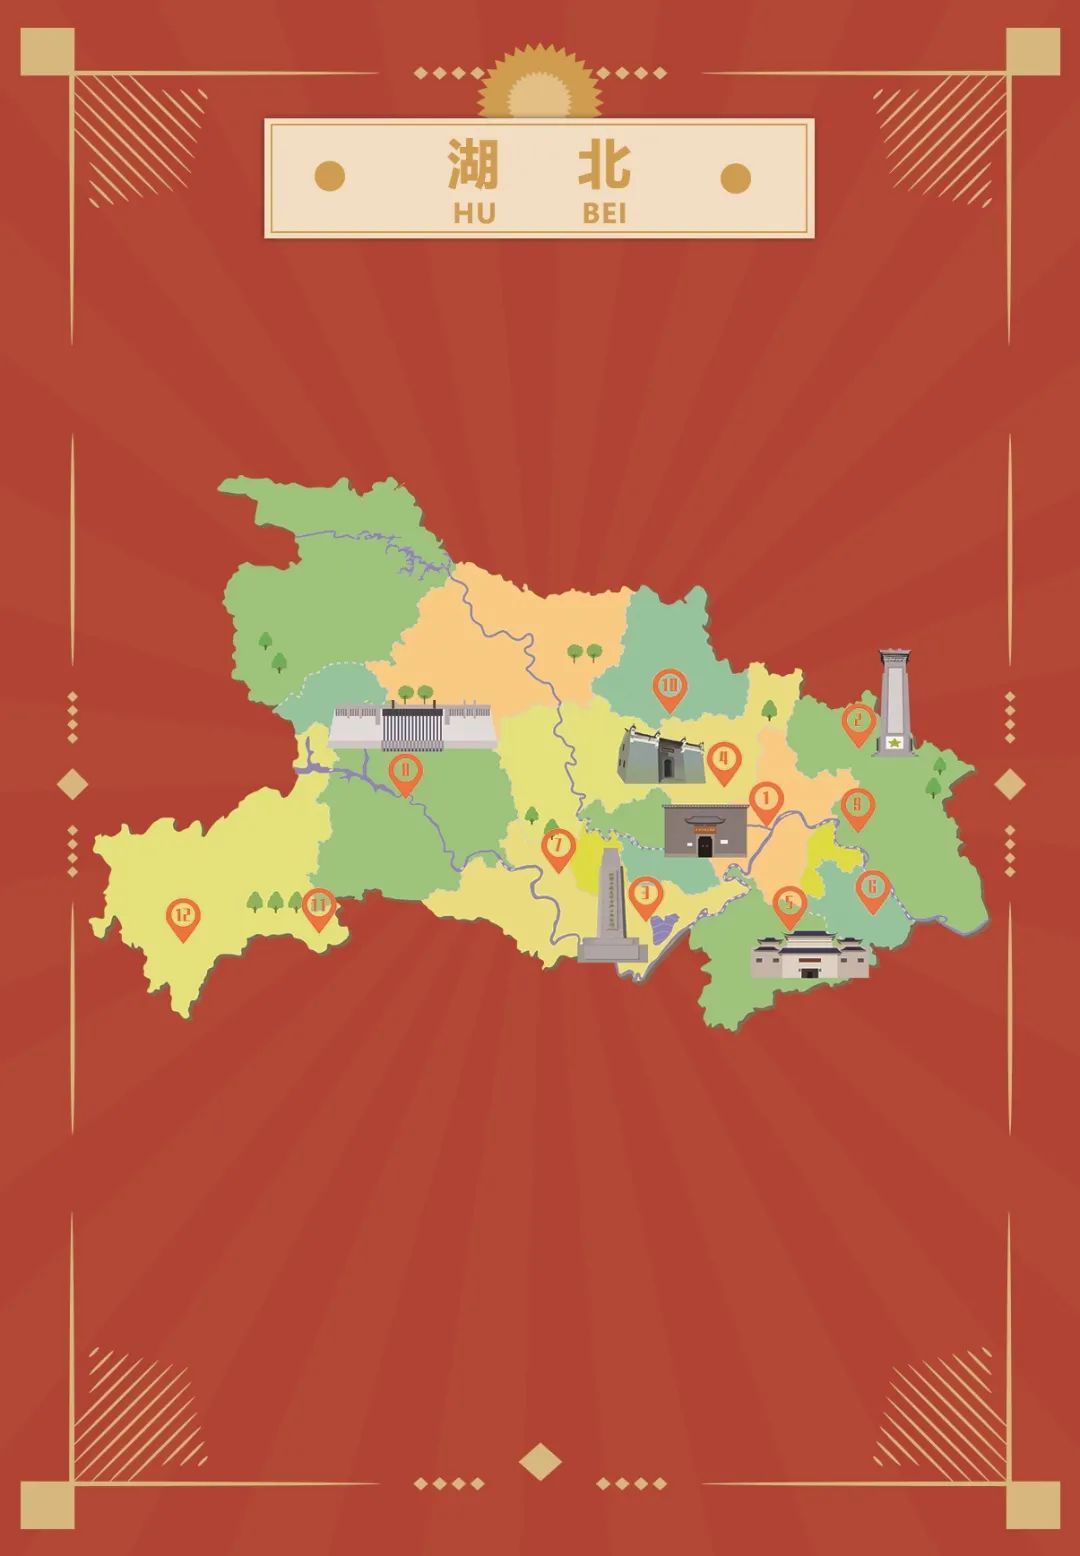 武汉红色抗日地图路线图片